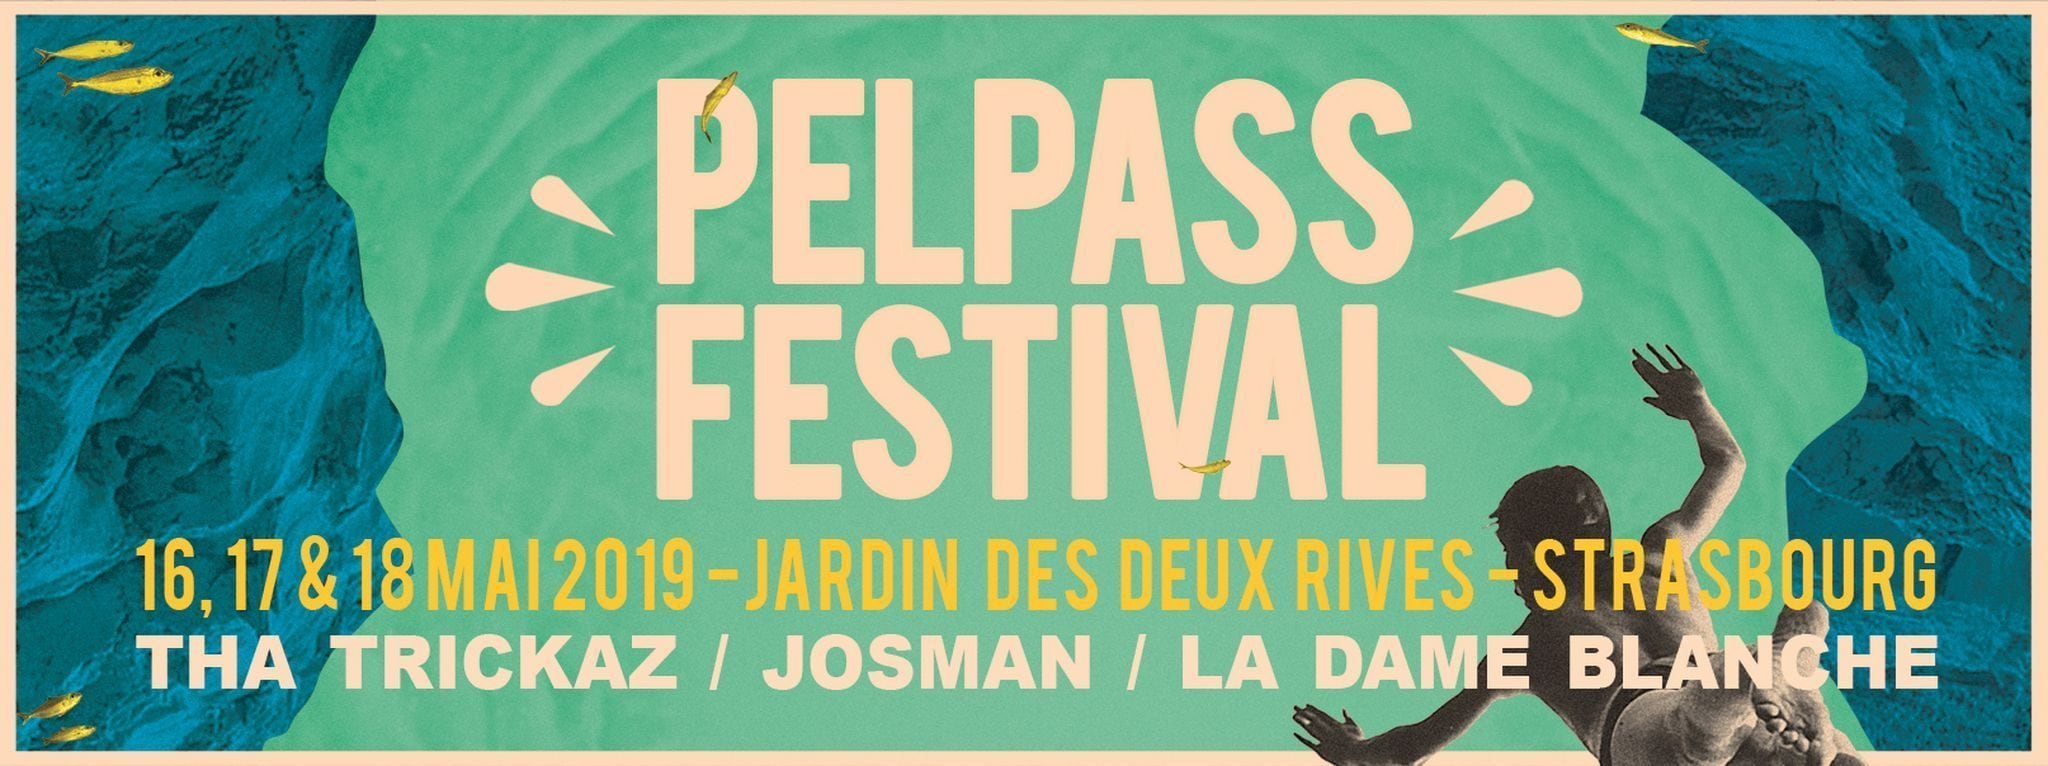 Gagnez des places pour le Pelpass Festival